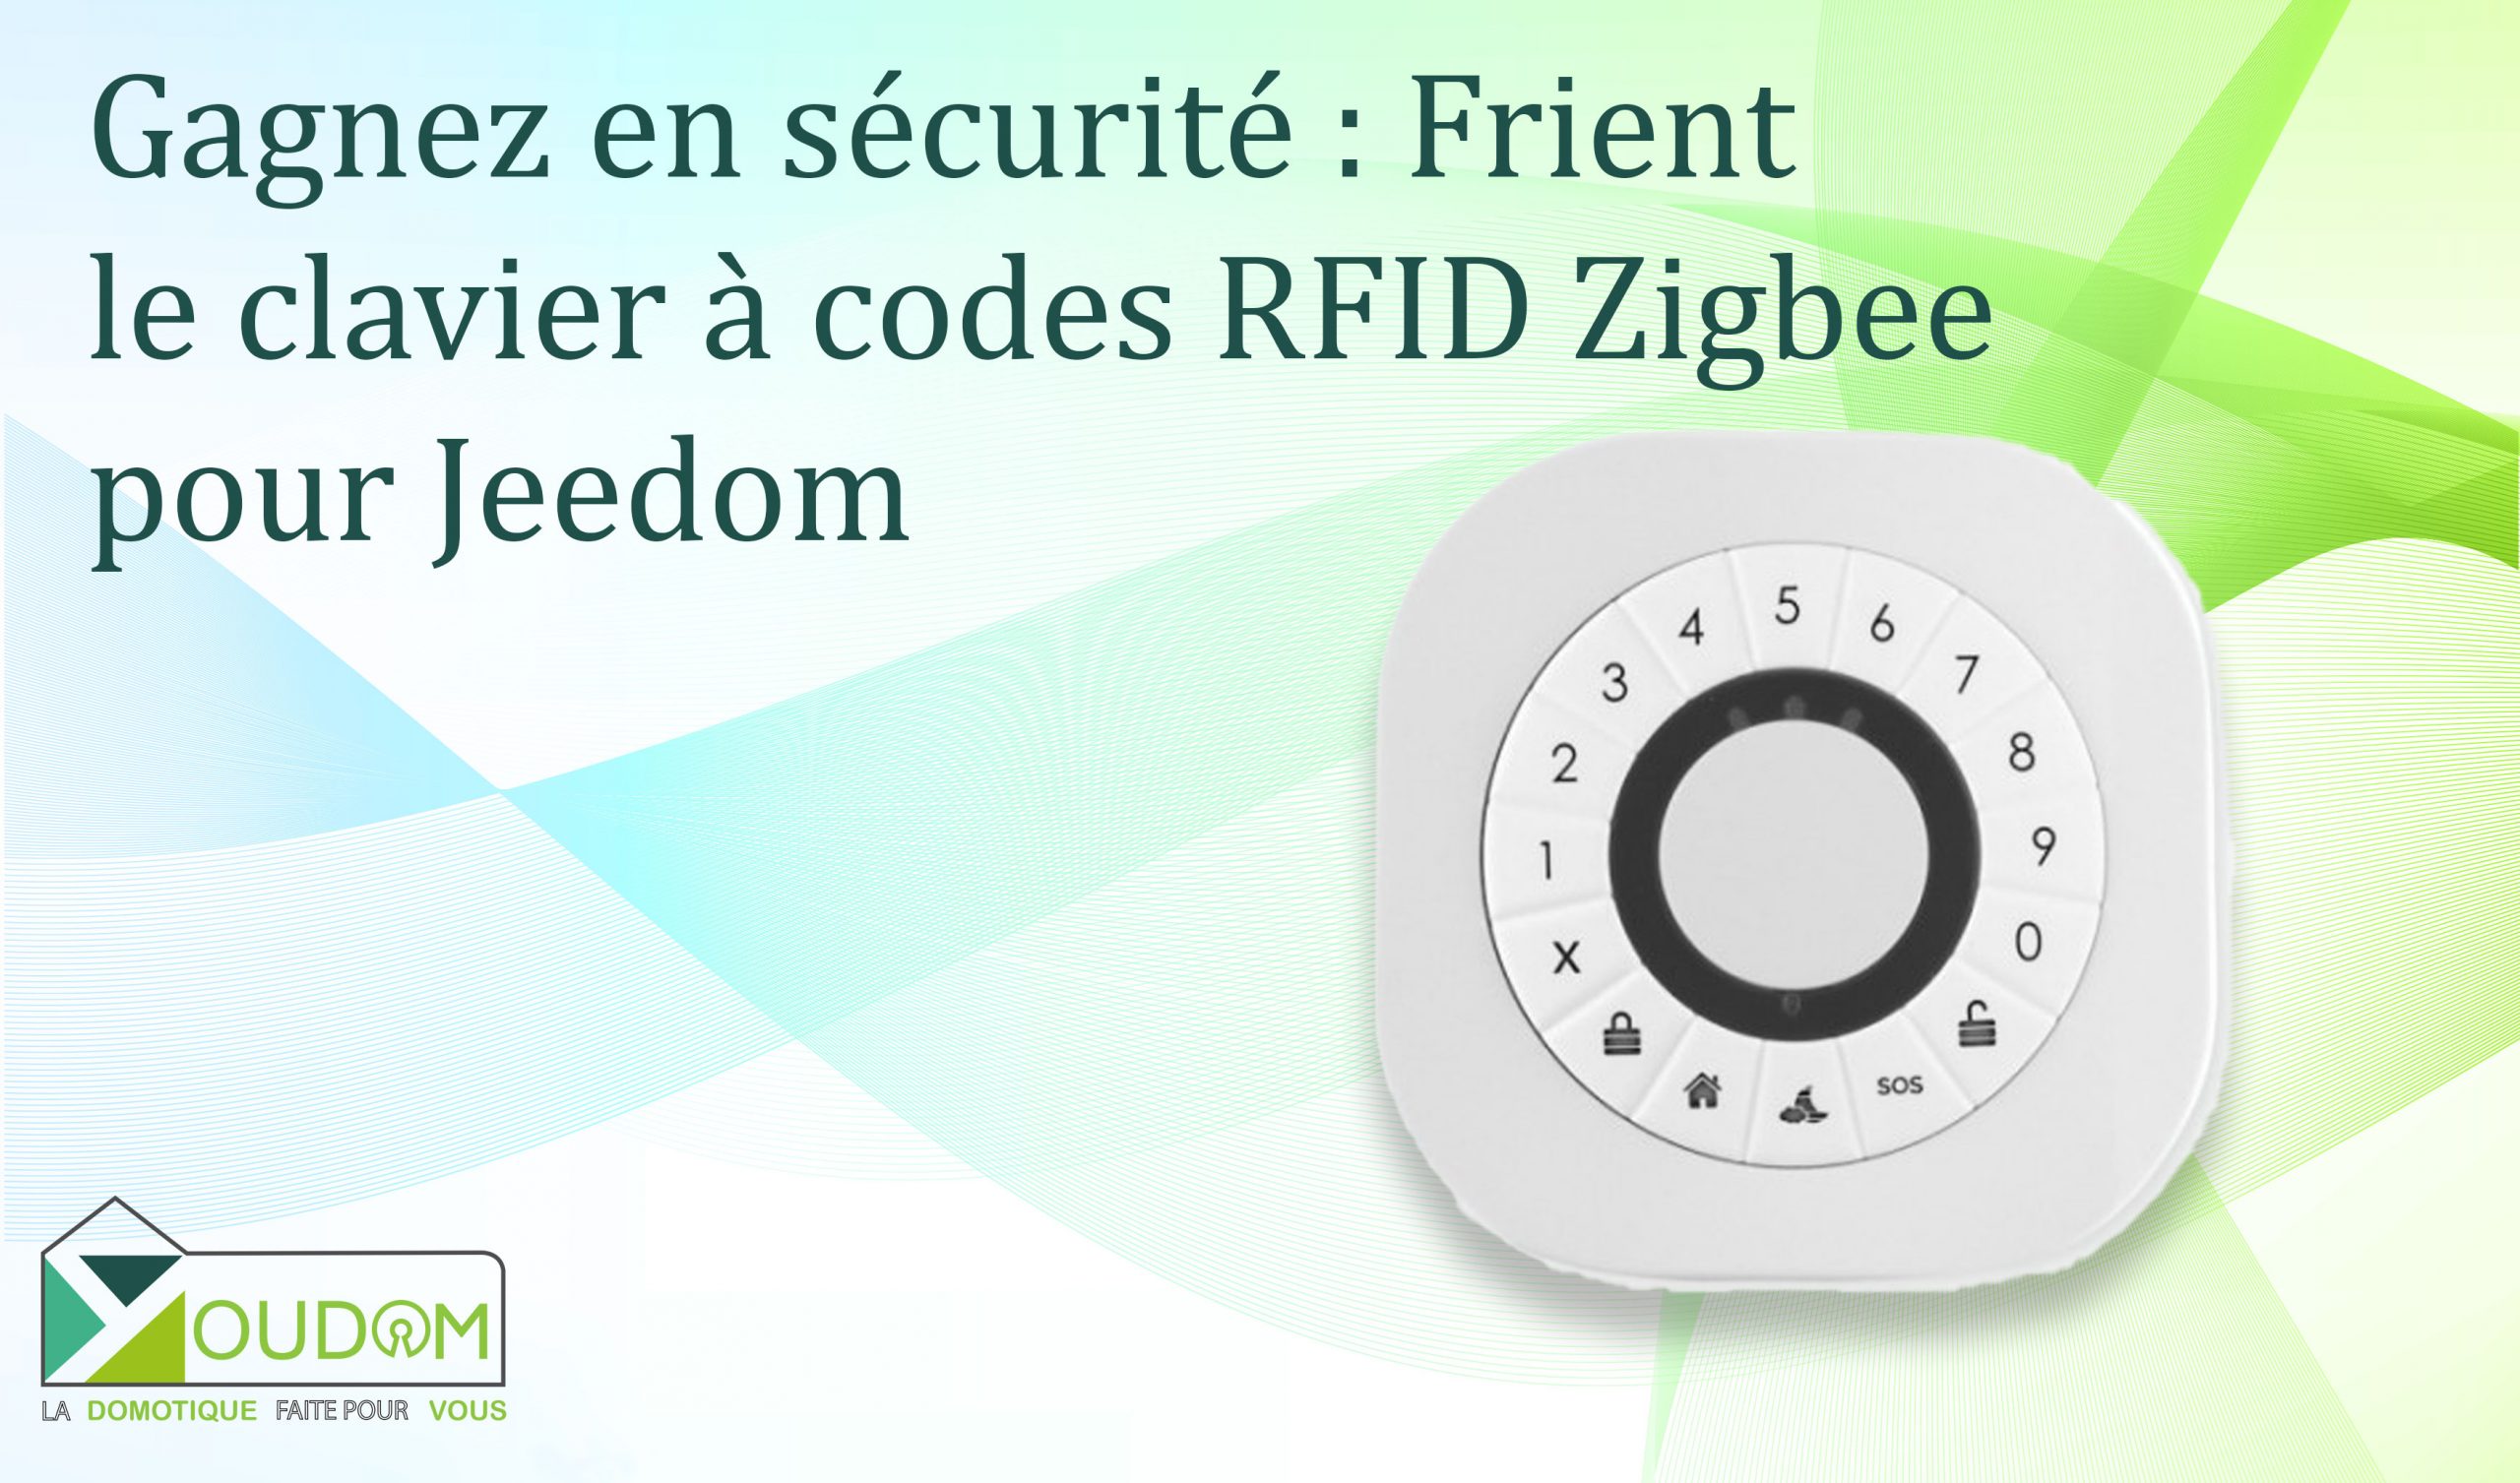 You are currently viewing Gagnez en sécurité : Frient le clavier à codes RFID Zigbee pour votre domotique Jeedom